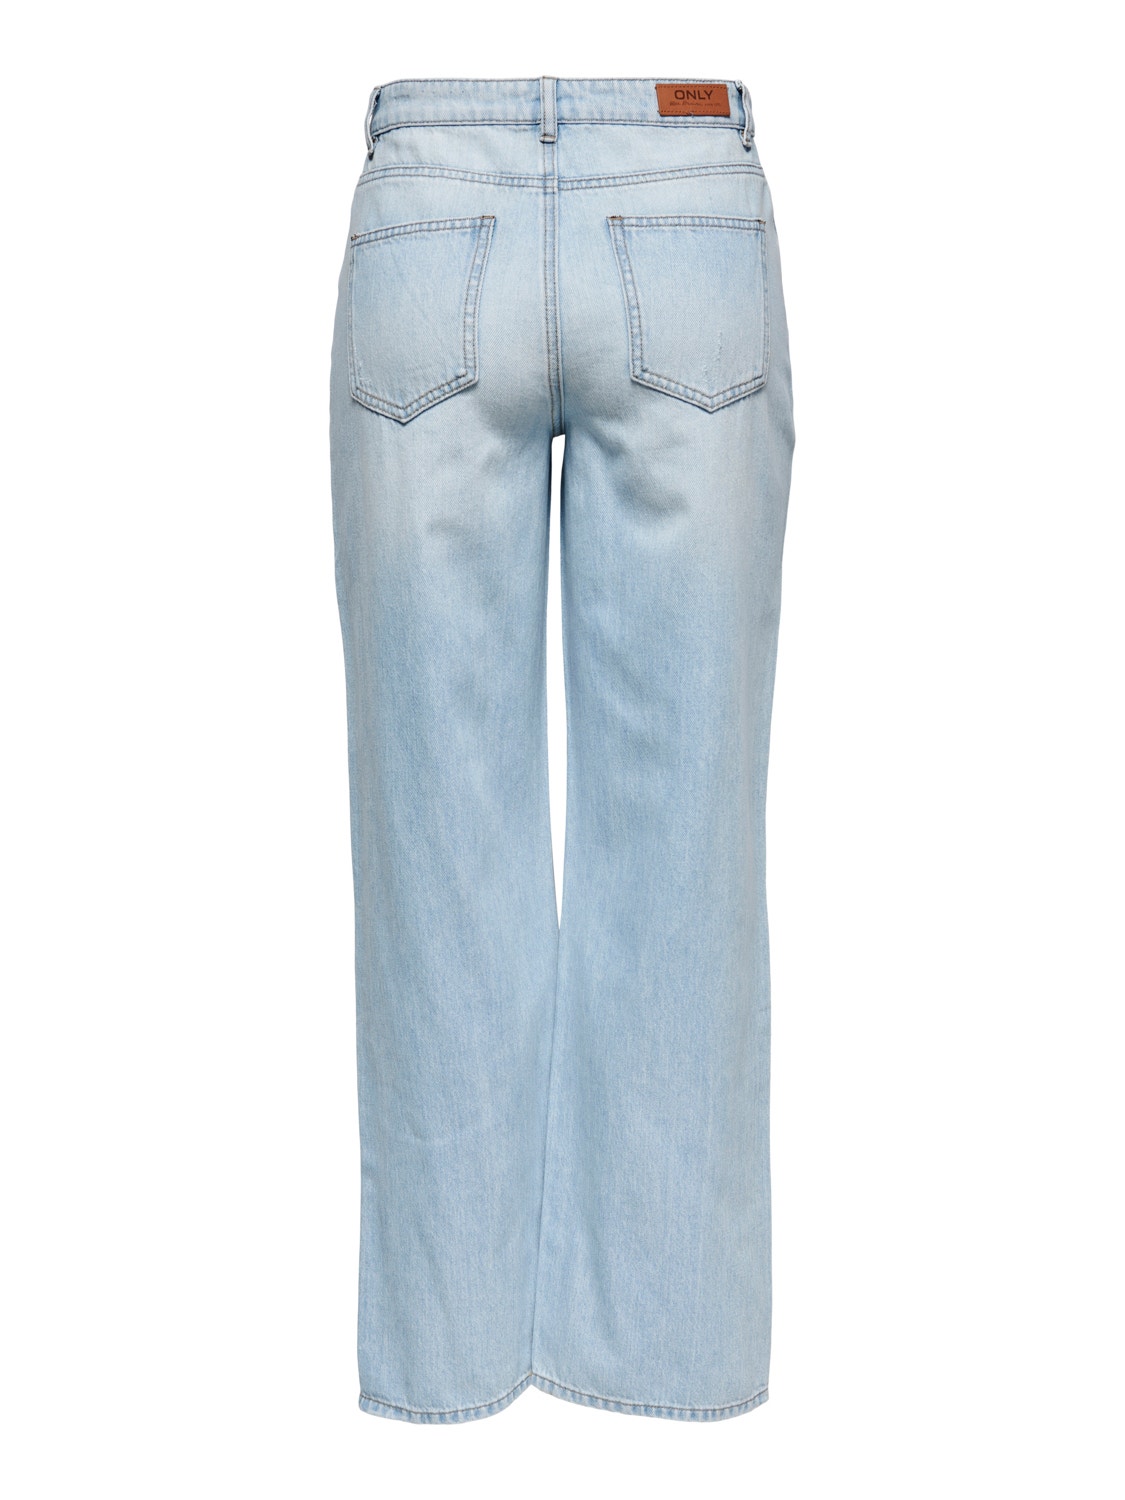 ONLY High waist Jeans -Light Blue Denim - 15226069